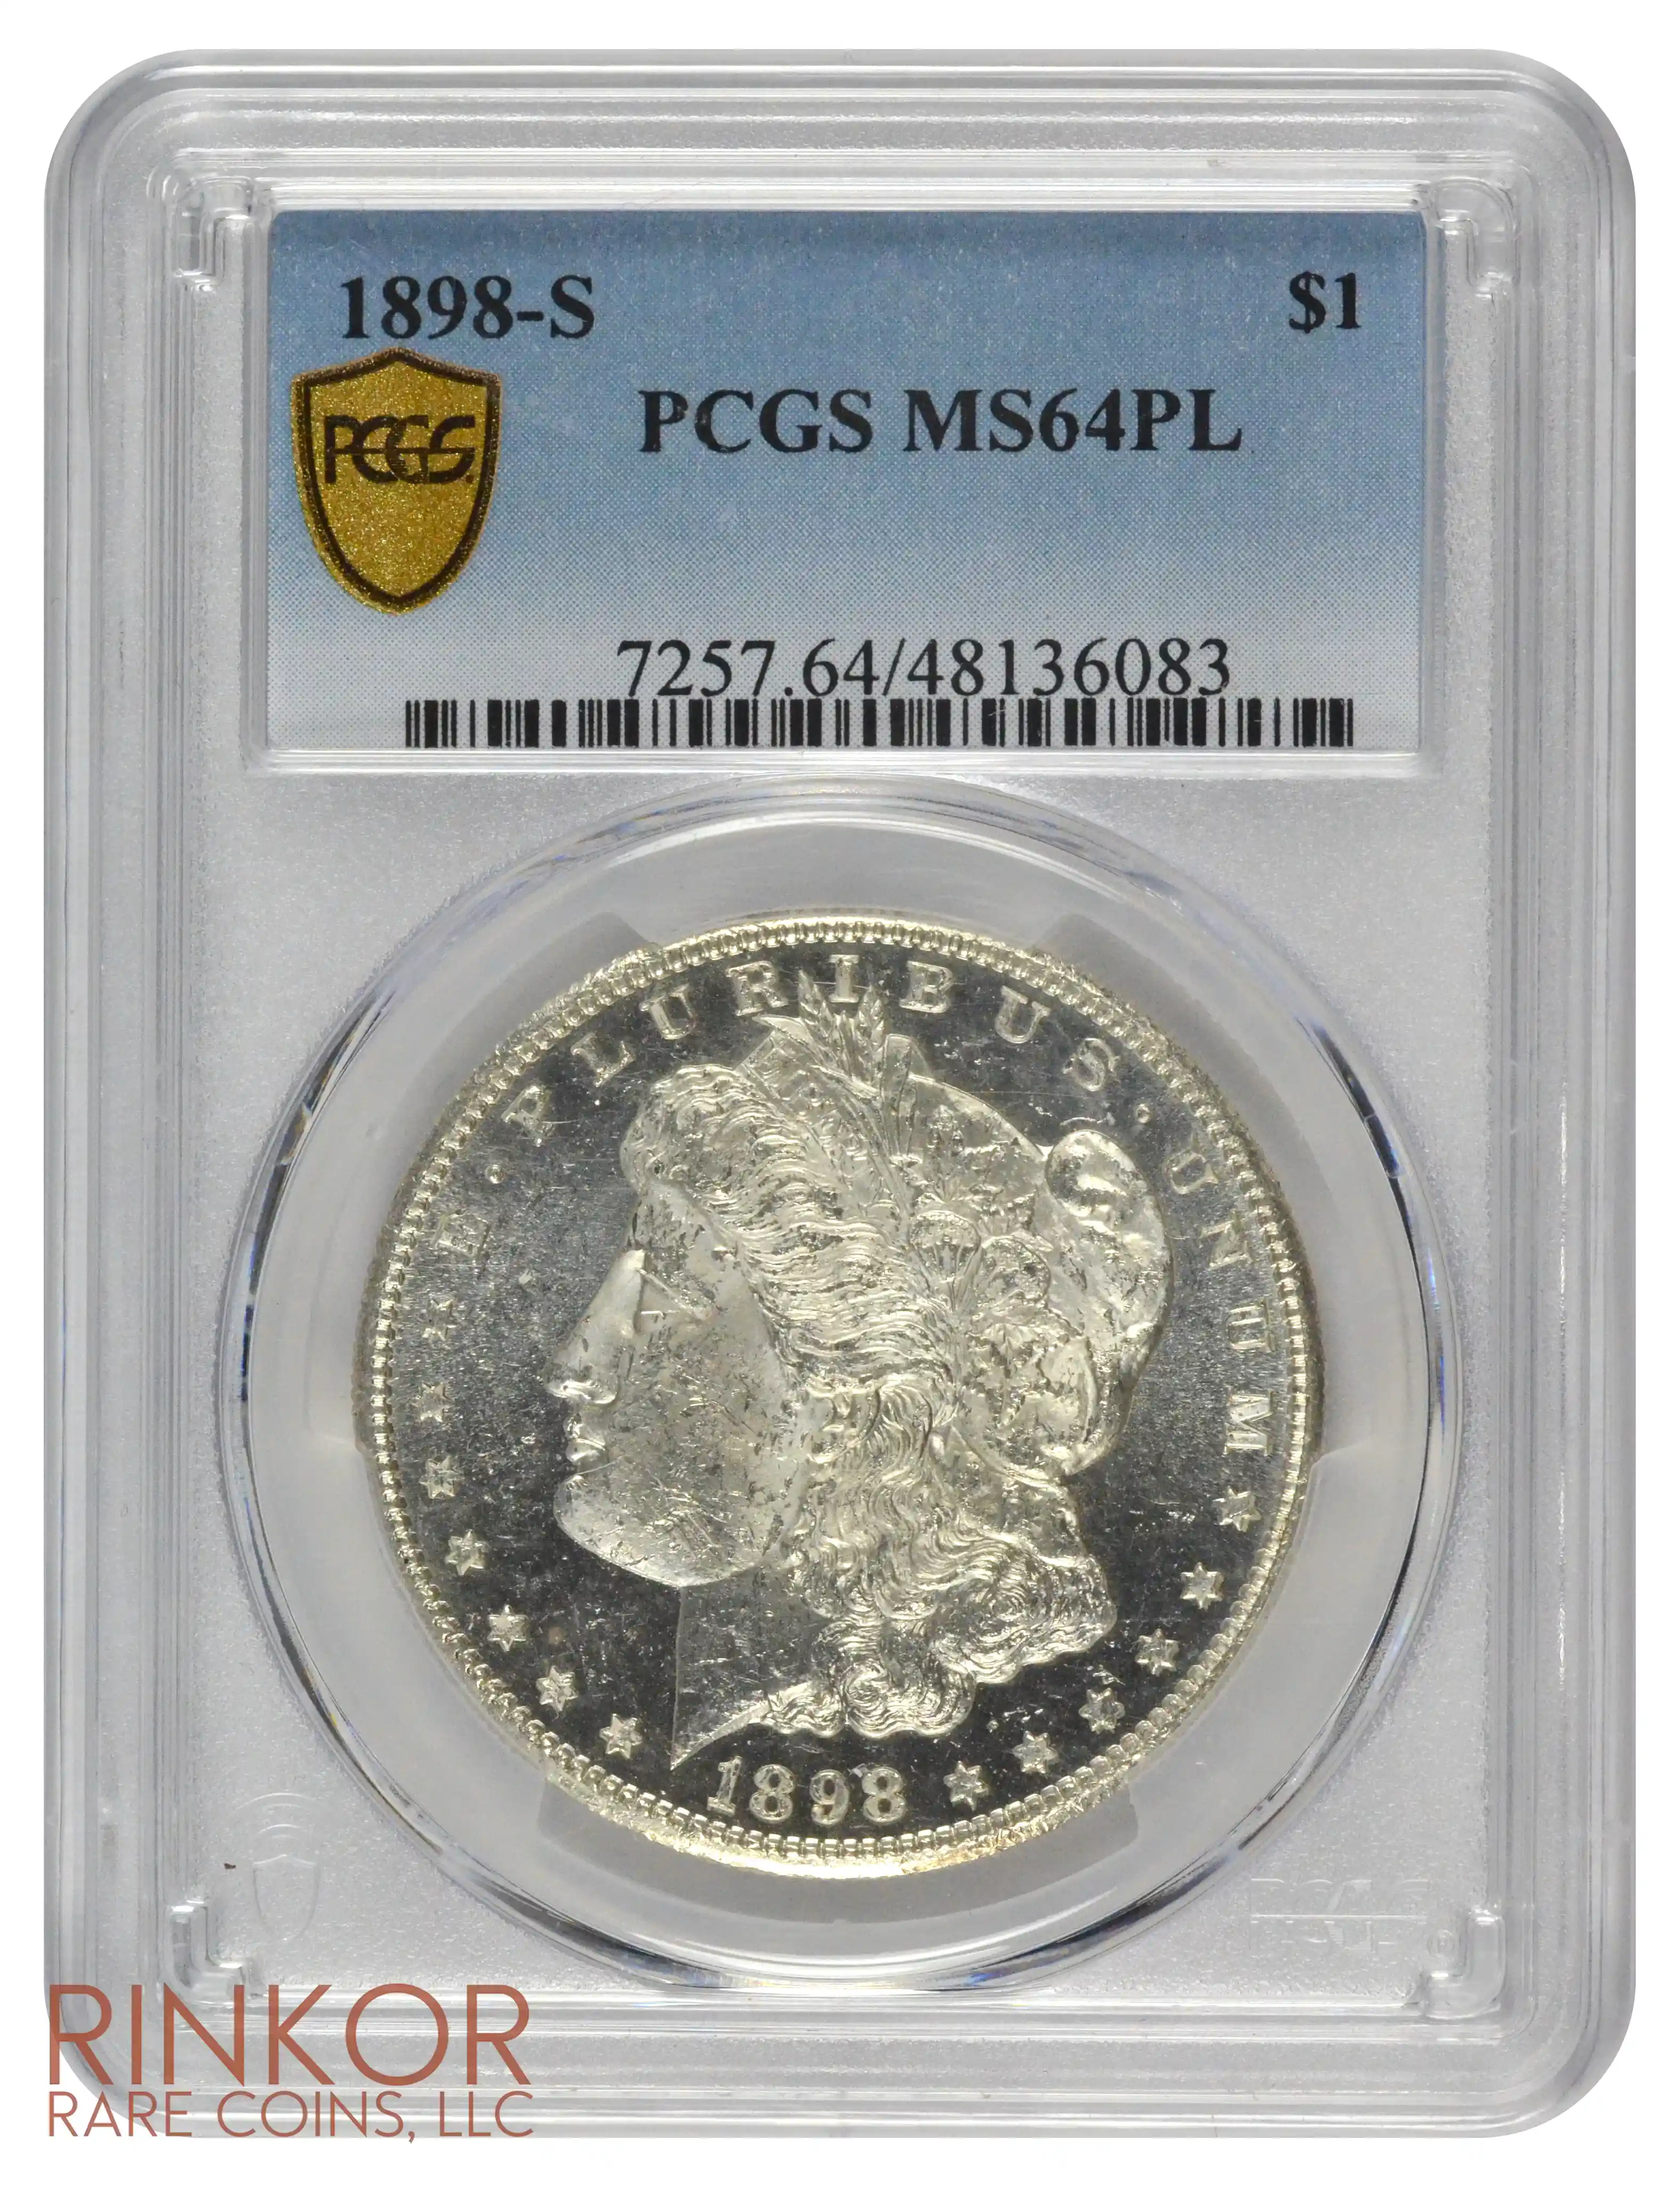 1898-S $1 PCGS MS 64 PL